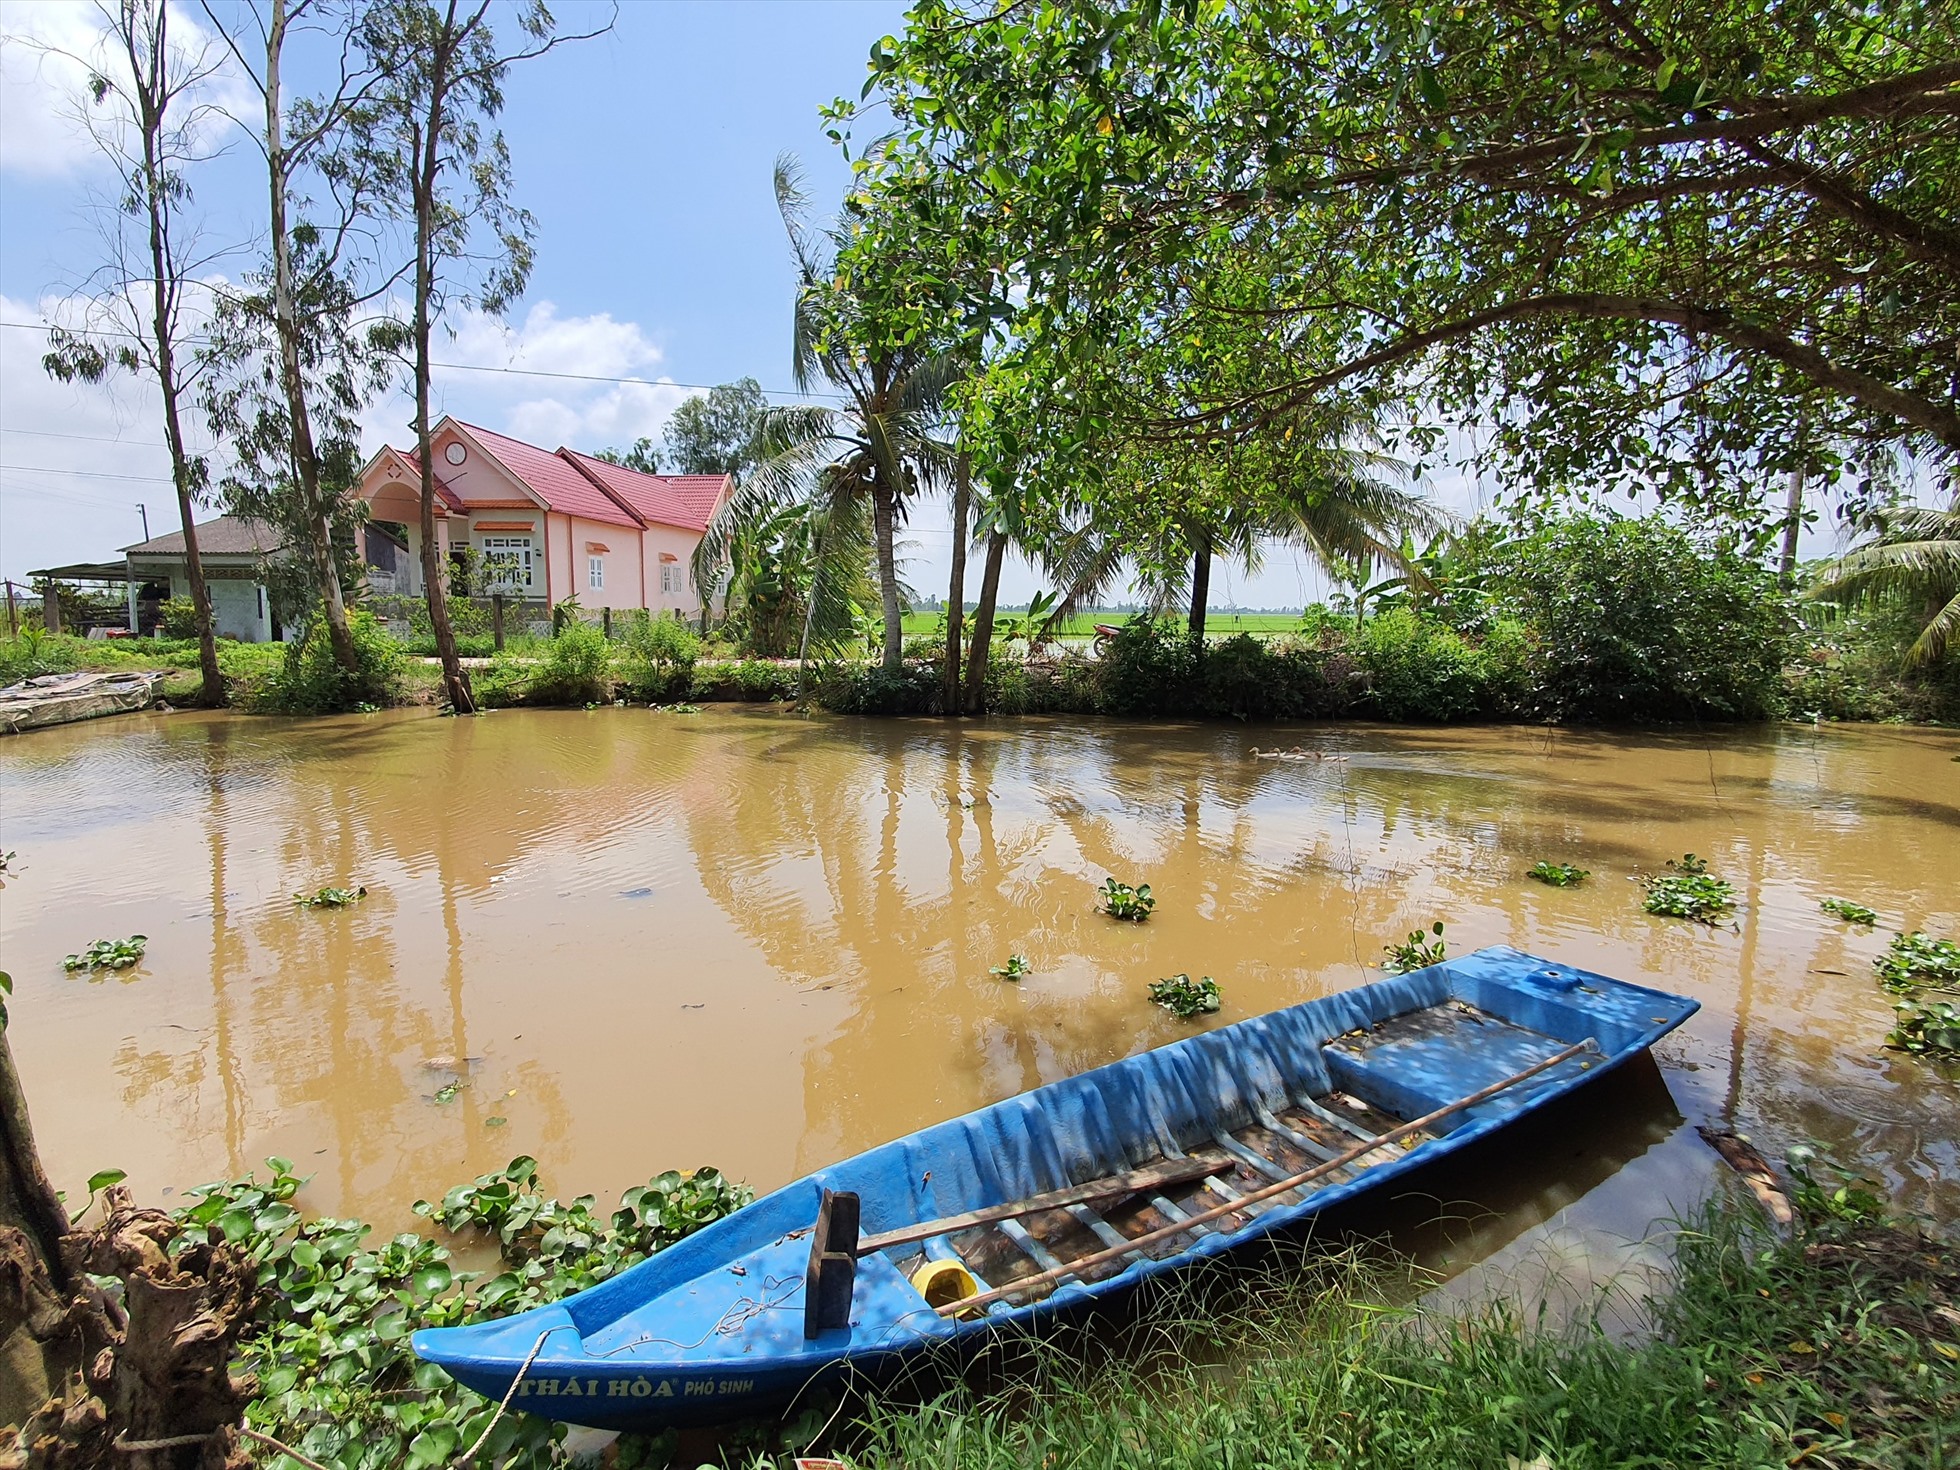 Nhiều hộ gia đình nông thôn ở tỉnh Bạc Liêu sống không tập trung, bốn bề  sông nước nên rất khó vận động trang bị mỗi hộ ít nhất 1 bình chữa cháy. Ảnh: Nhật Hồ